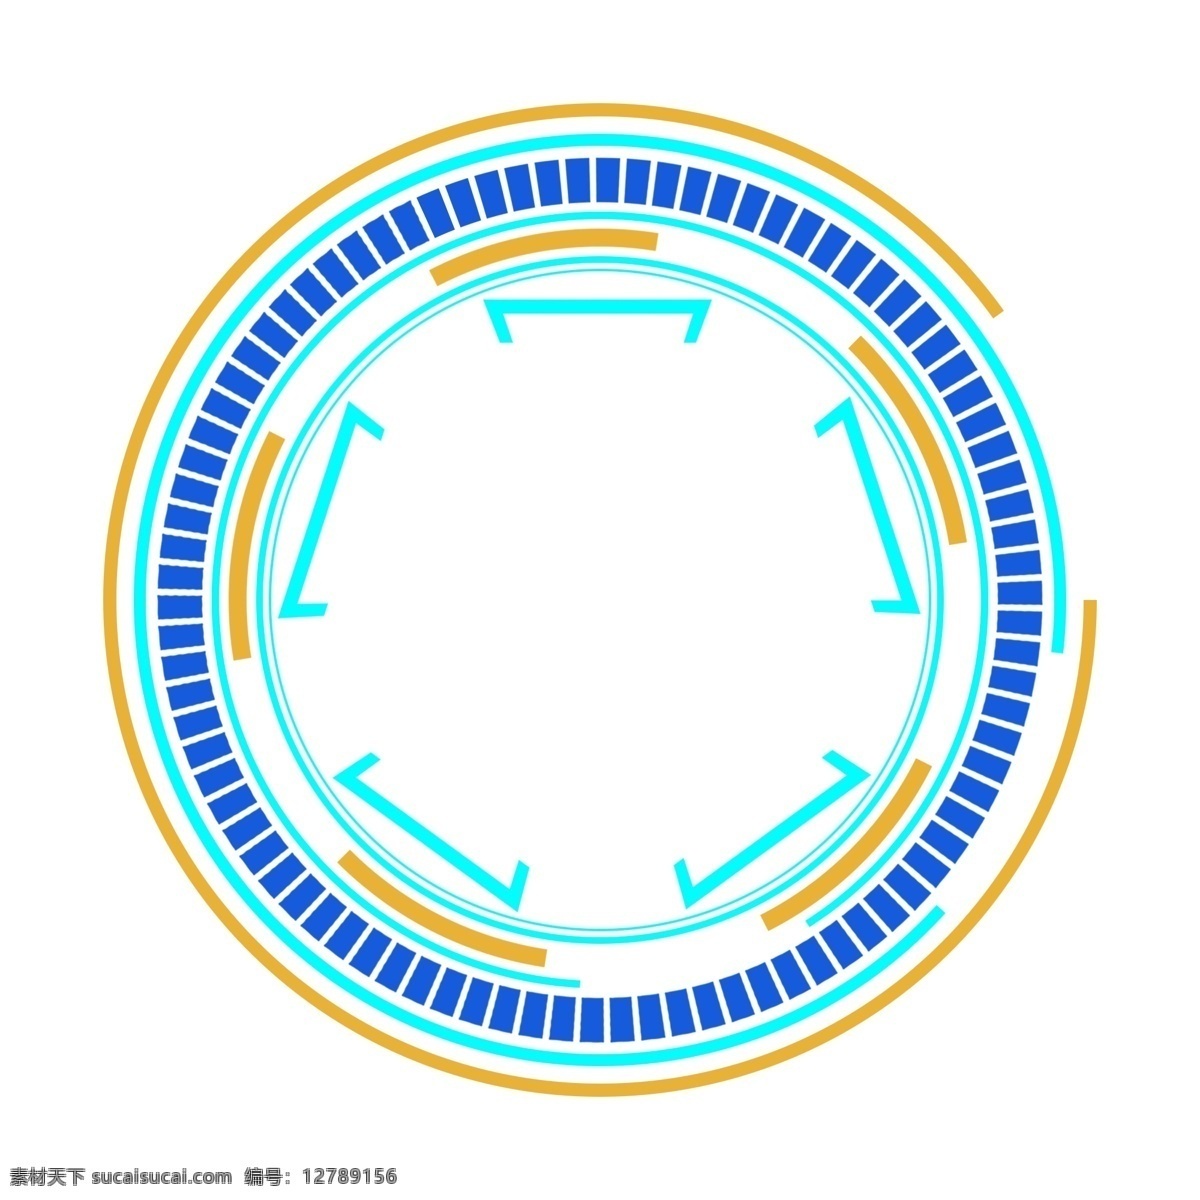 蓝色 黄色 科技 边框 商用 分 图 层 圆形 矩形 原创 科技边框 可商用 分图层 缺口圆形